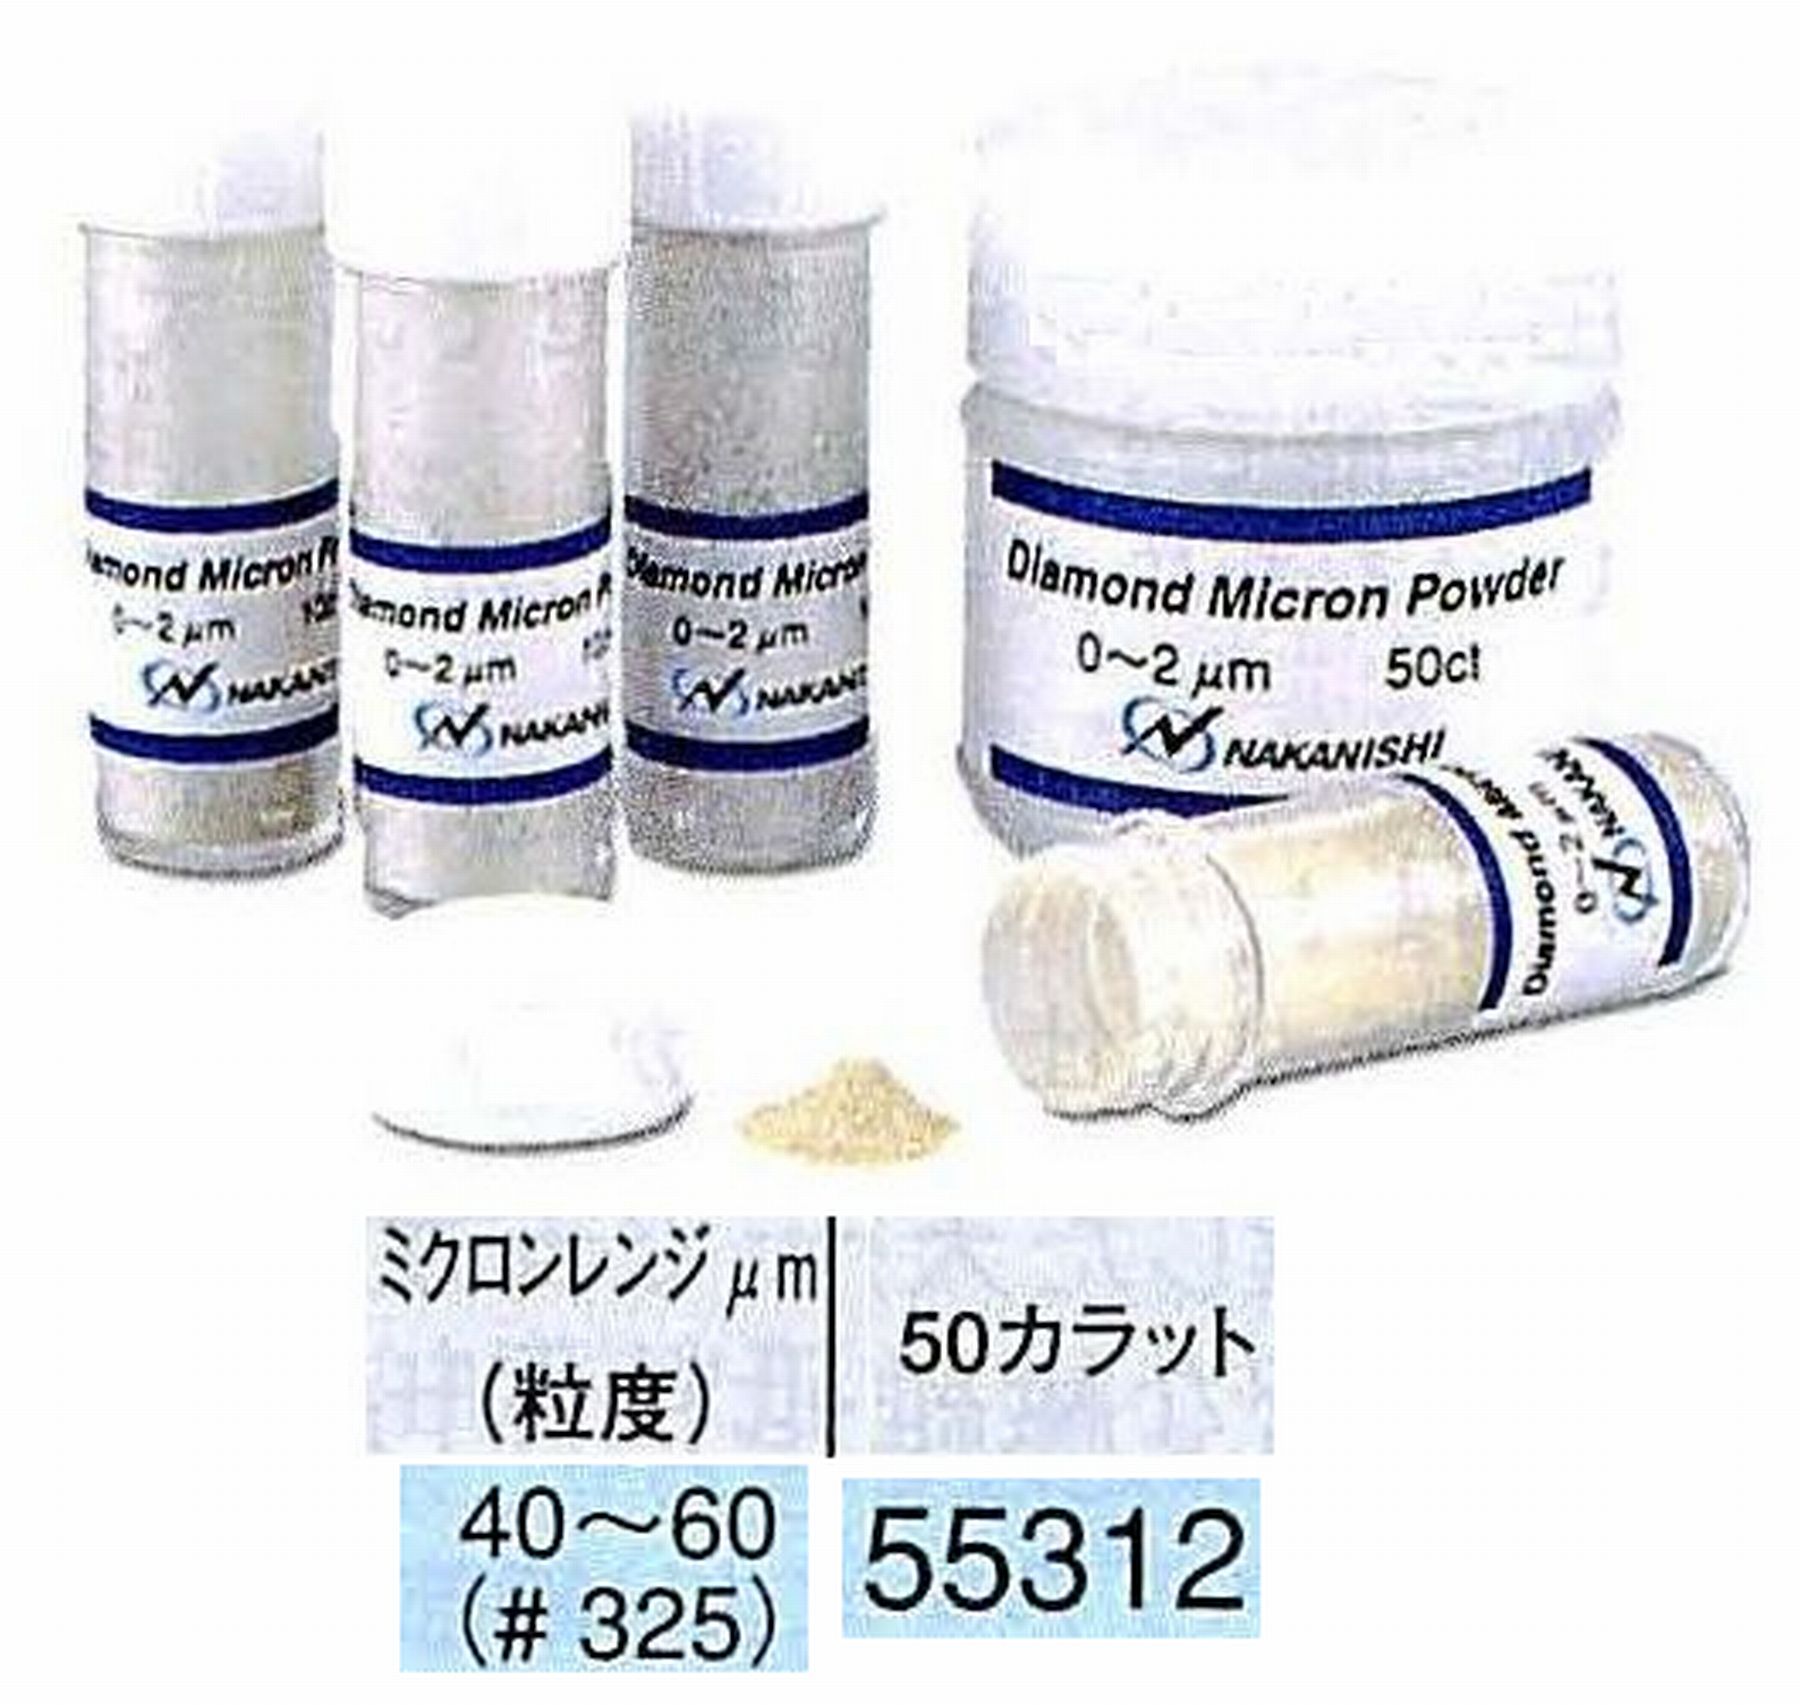 ナカニシ/NAKANISHI ダイヤモンドミクロンパウダー ミクロンレンジ40～60(砥度) 50カラット 55312